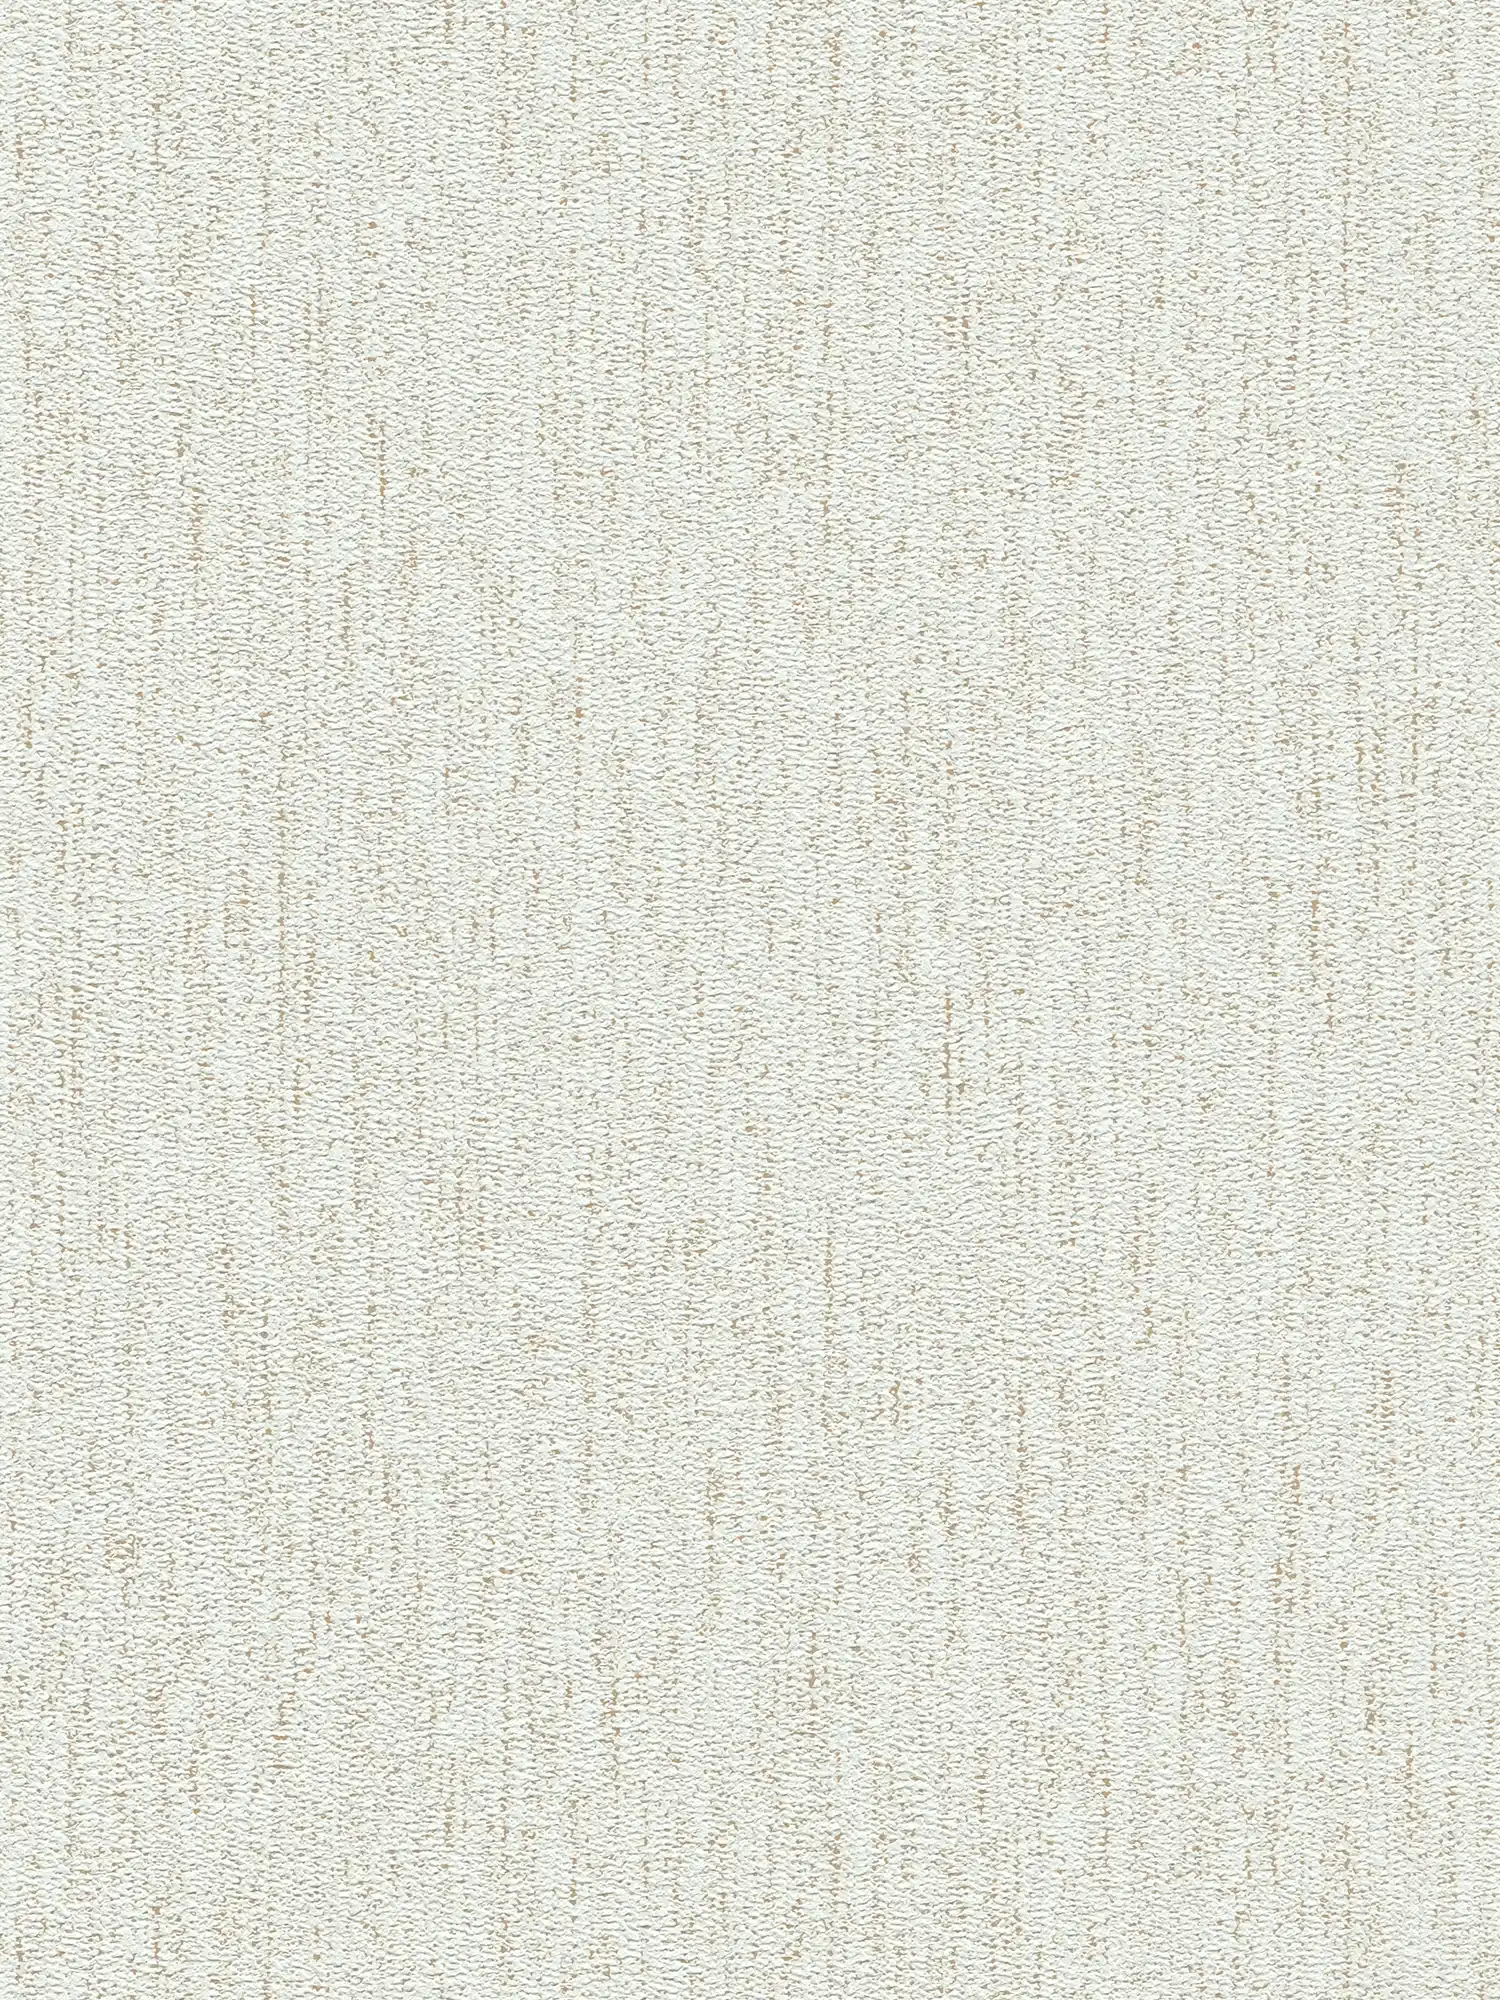 Einfarbige Gewebestruktur mit leichtem Glanz – Weiß, Gold
